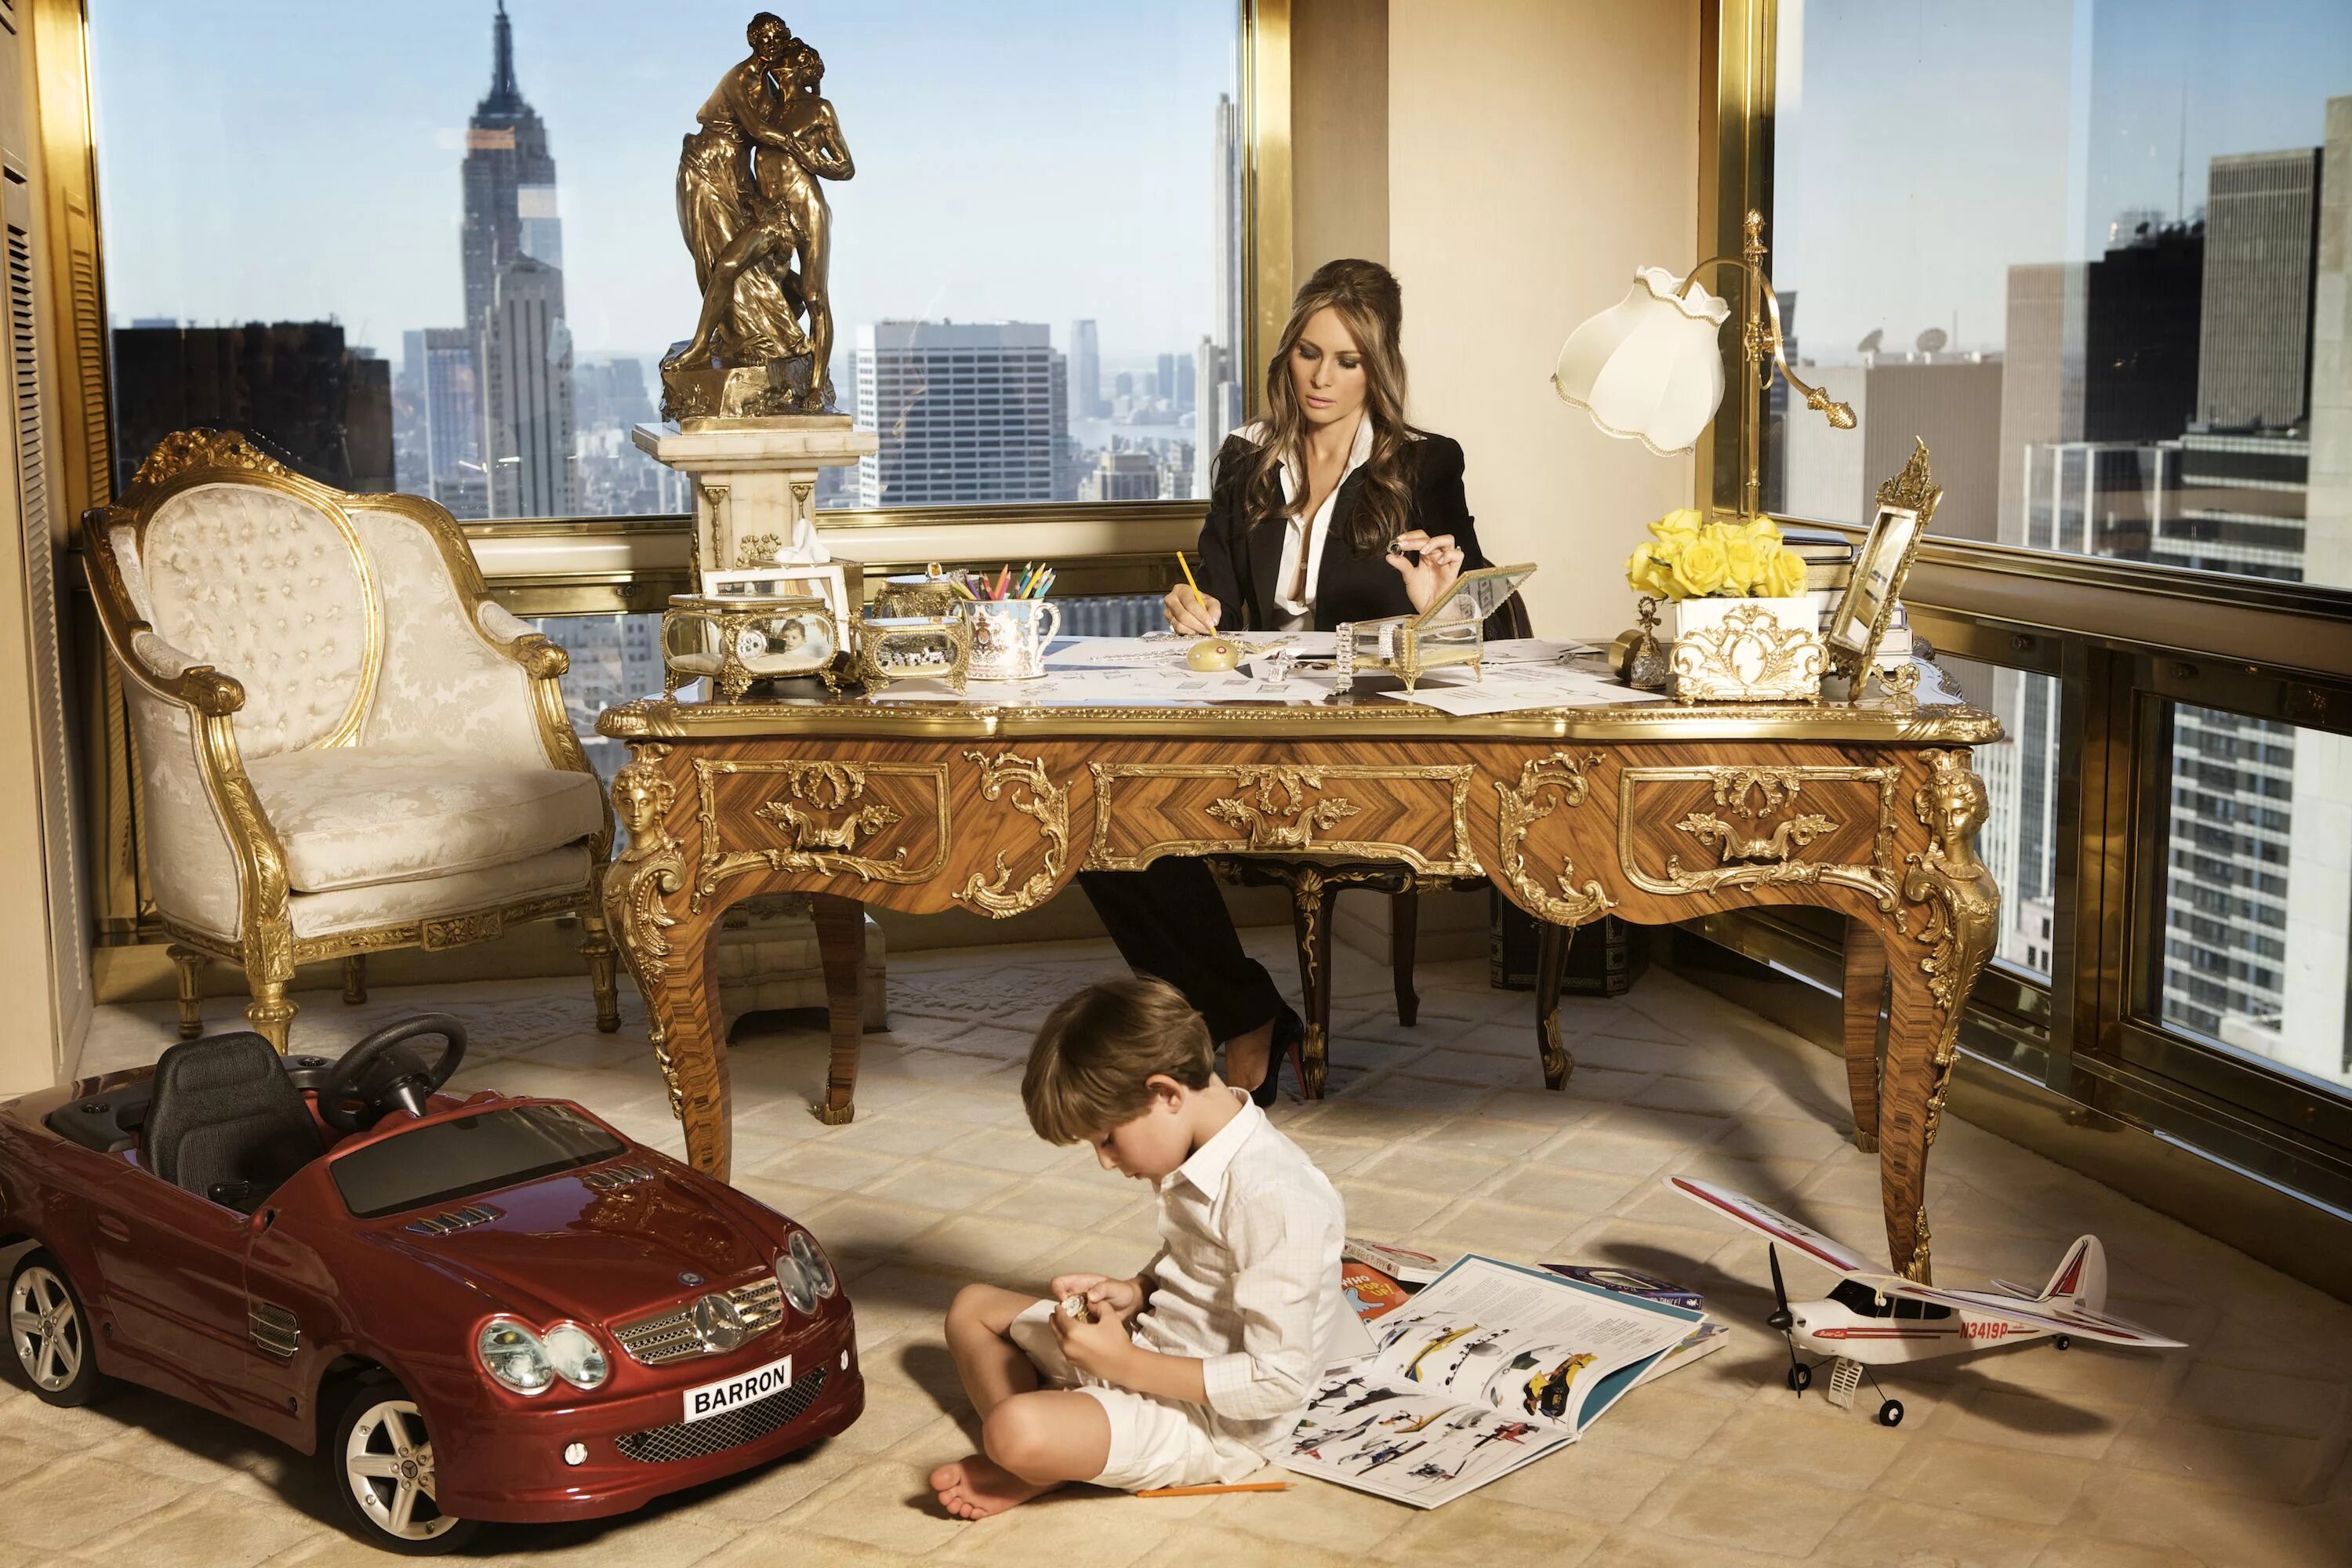 Дом Дональда Трампа в Нью-Йорке. Квартира Дональда Трампа в Нью Йорке. Дети богачей. Роскошь и богатство. Самая насыщенная жизнь